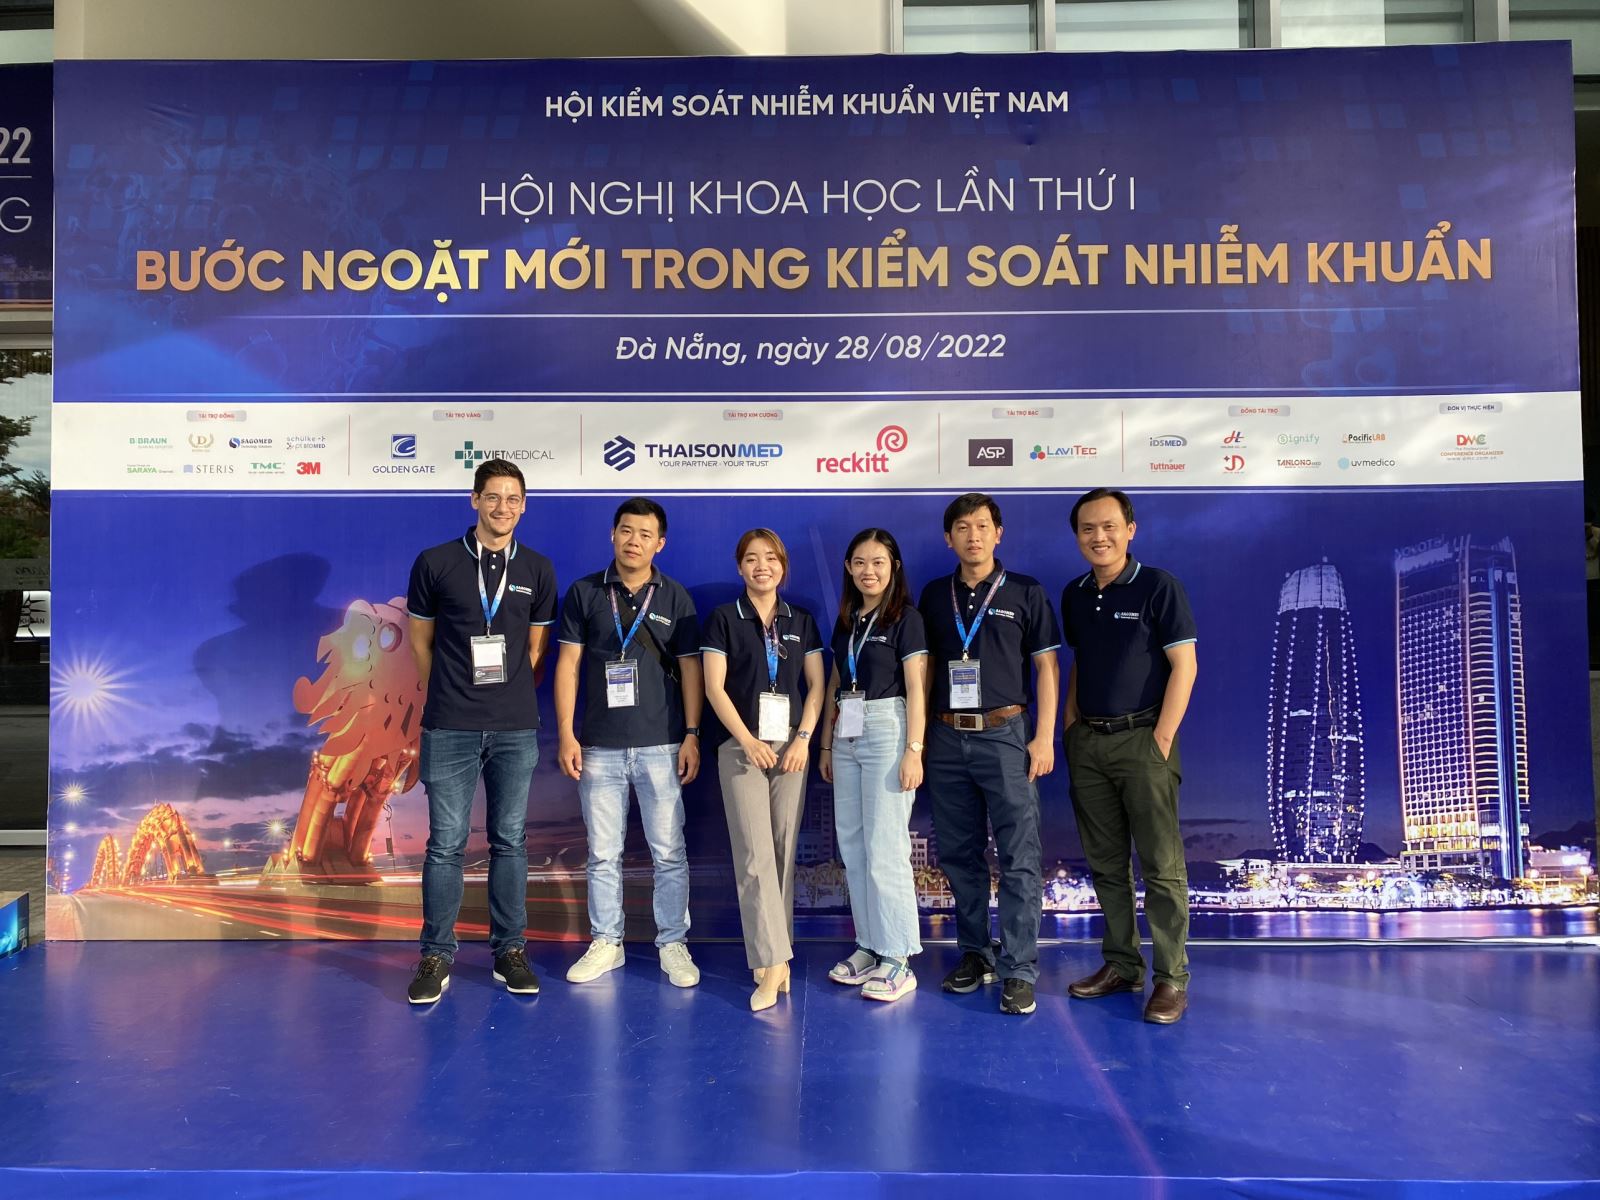 SAGOMED vinh dự tham gia Hội nghị Khoa học Kiểm soát Nhiễm khuẩn lần thứ I ngày 28/8/2022 tại Đà Nẵng với tư cách là nhà tài trợ Đồng